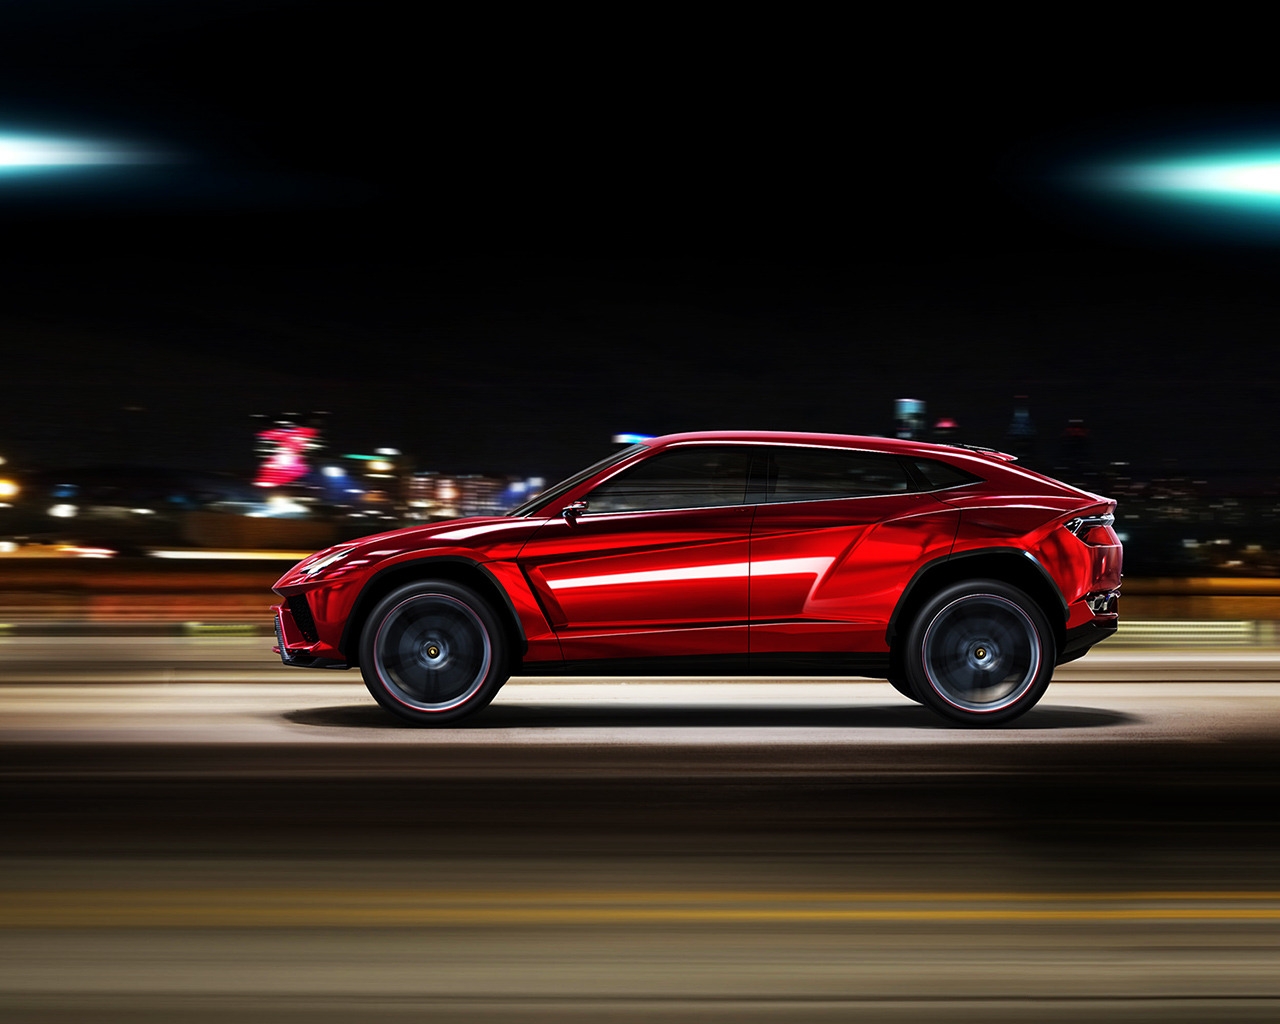 Lamborghini Urus Speed for 1280 x 1024 resolution